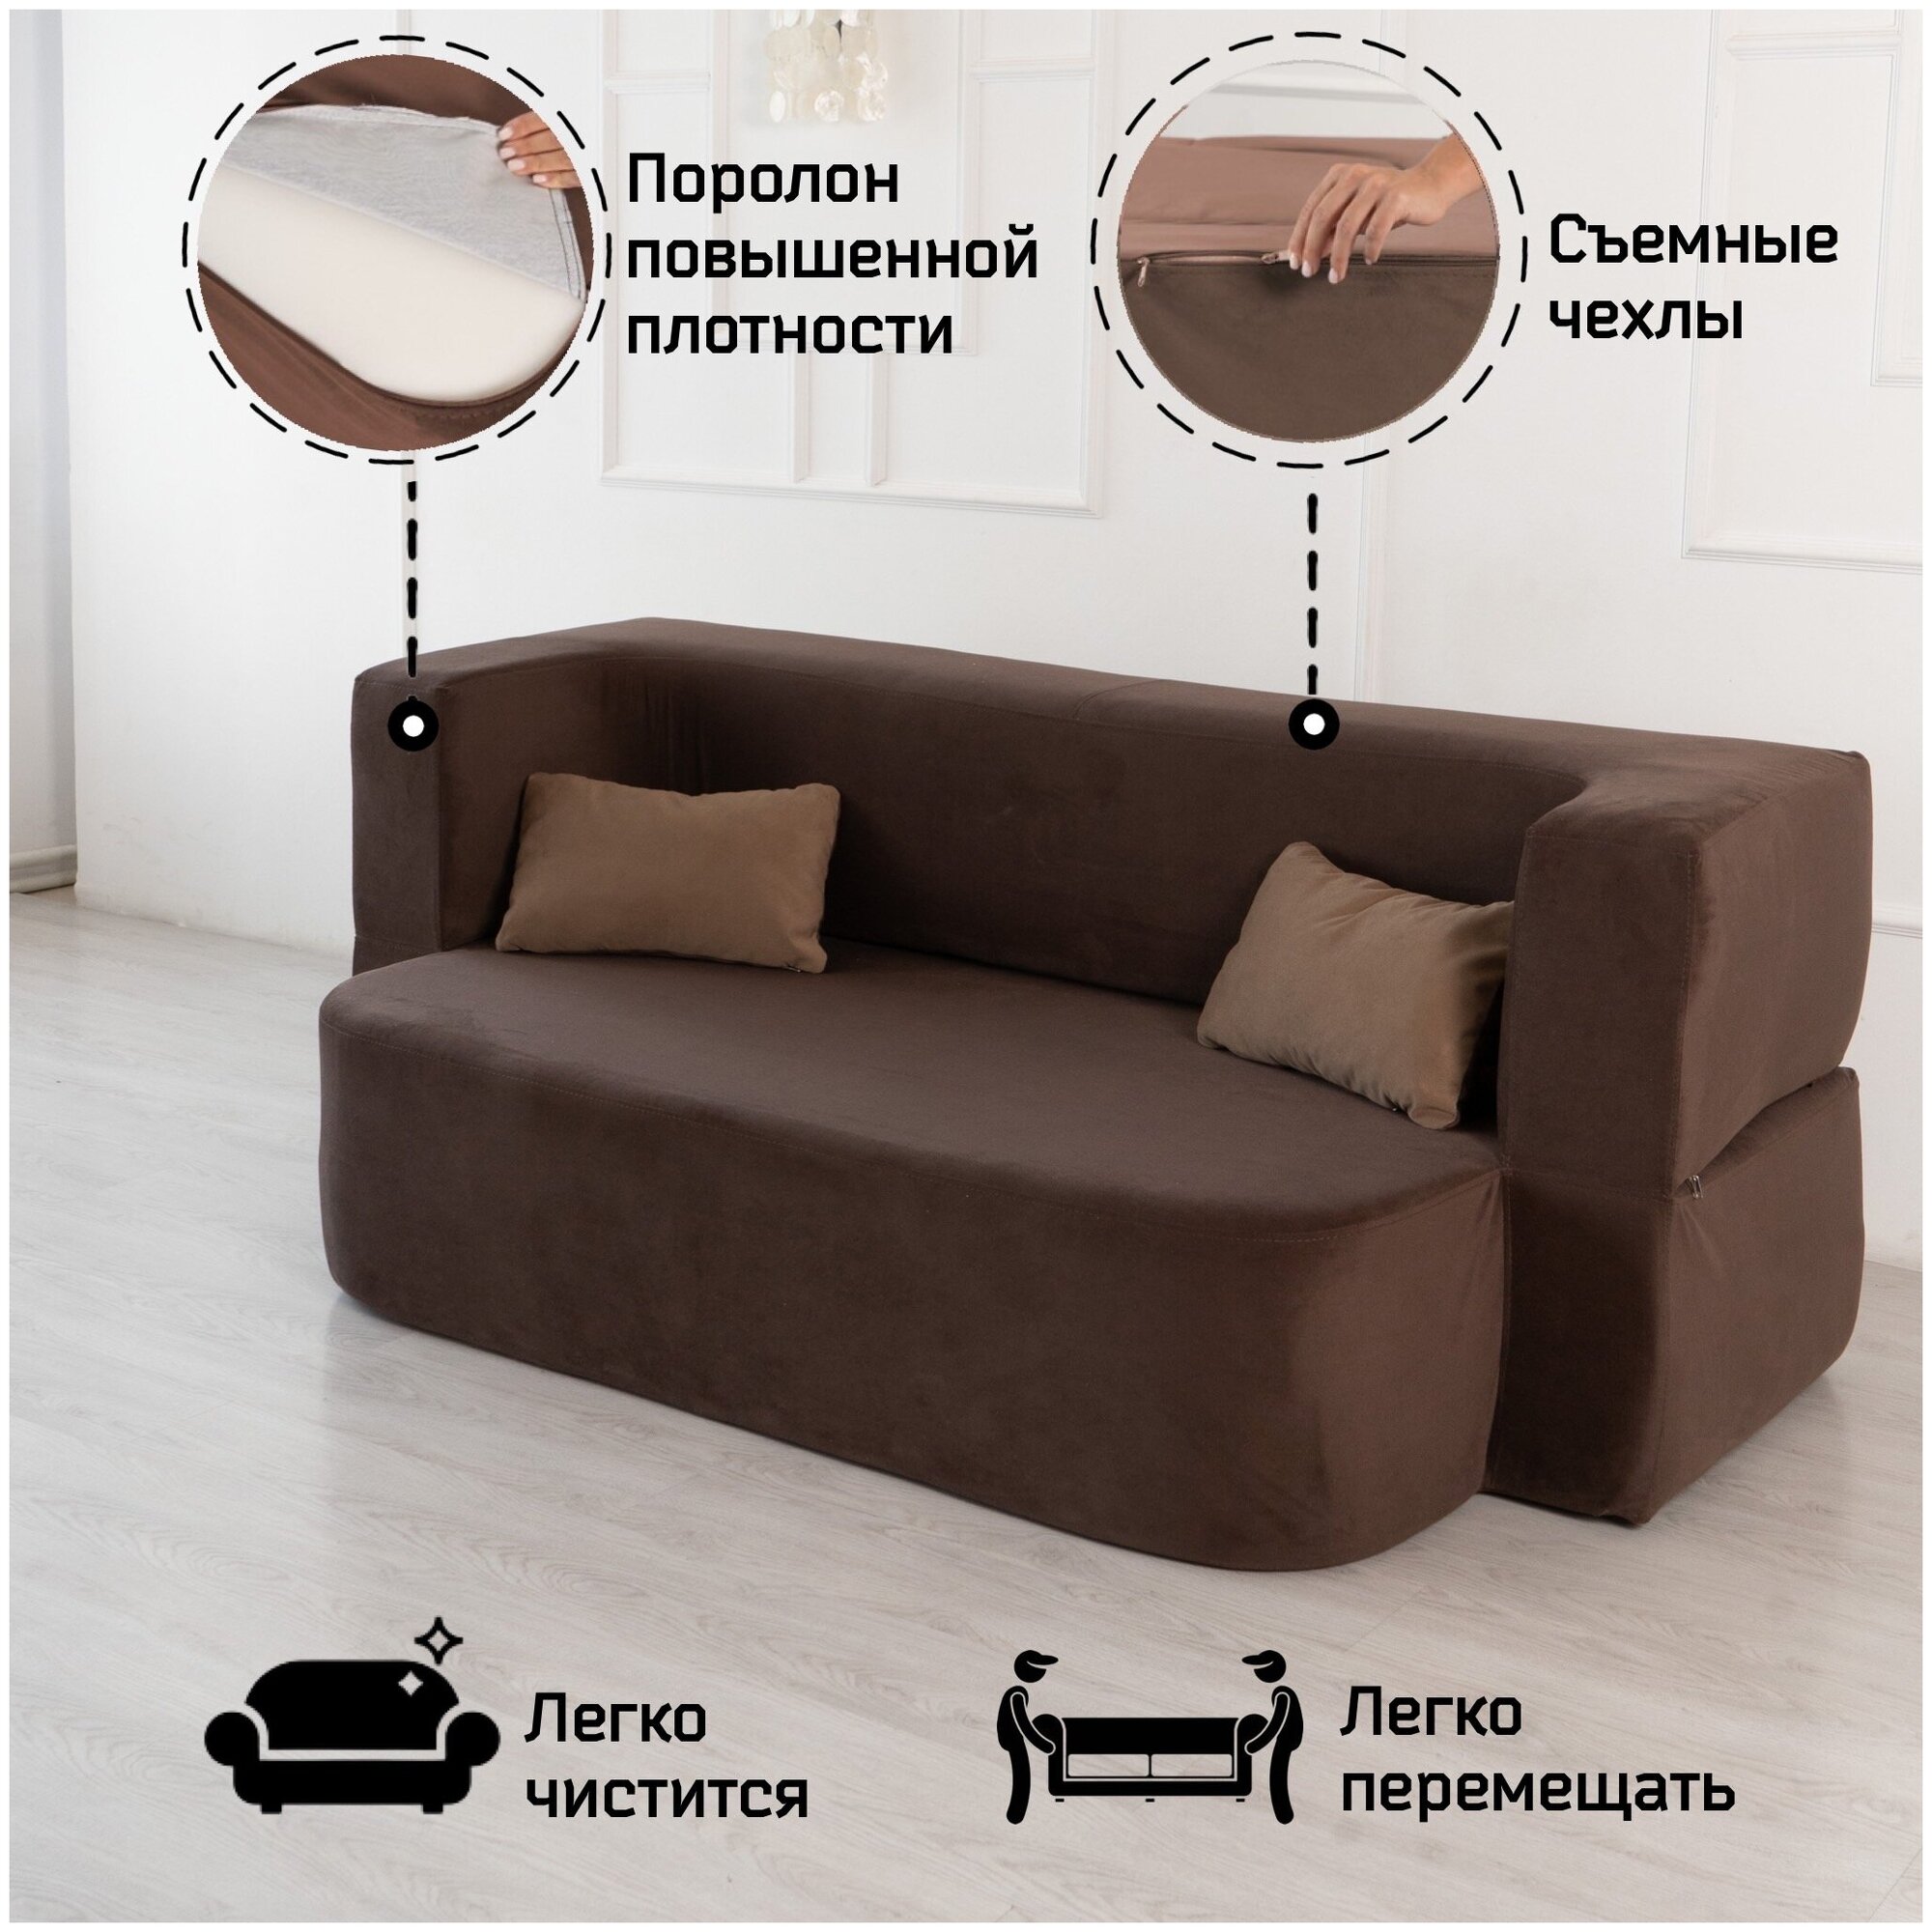 Раскладной диван кровать трансформер Дадли Лайт (Колибри) от Div-one 195*105*80 см, бескаркасный, двухспальный, со спальным местом 195*130 см, коричневый